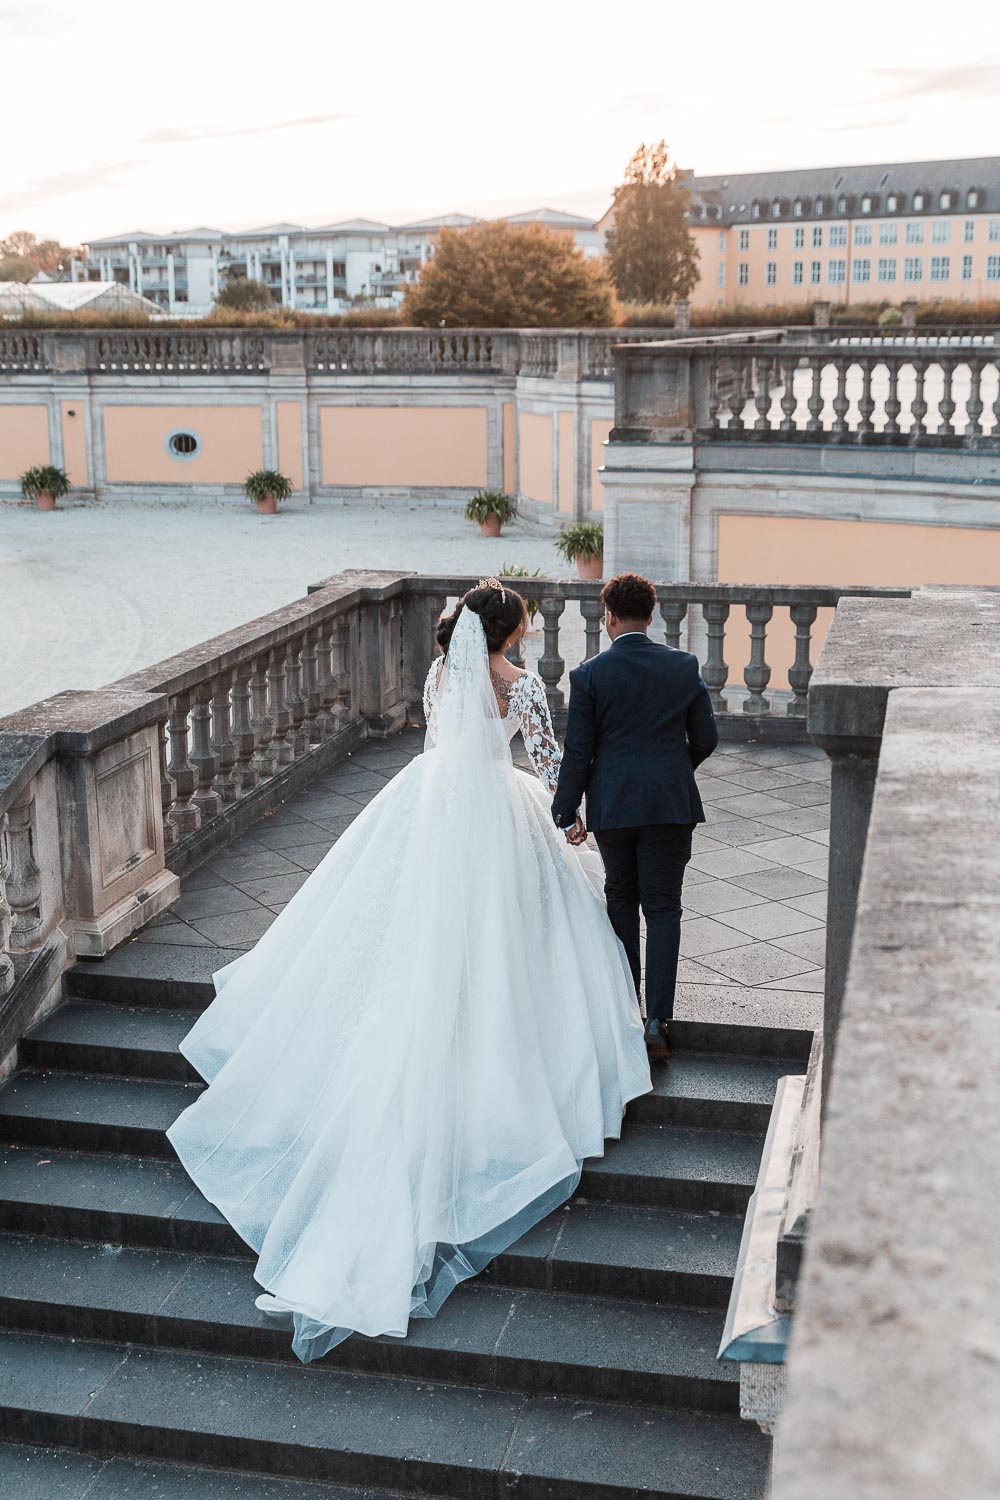 Braut und Bräutigam besteigen die Treppe zur Terrasse zum Schloss Augustusburg in Brühl. Ein natürliches Hochzeitsfoto welches umgestellt und aus der Situation heraus entstand.